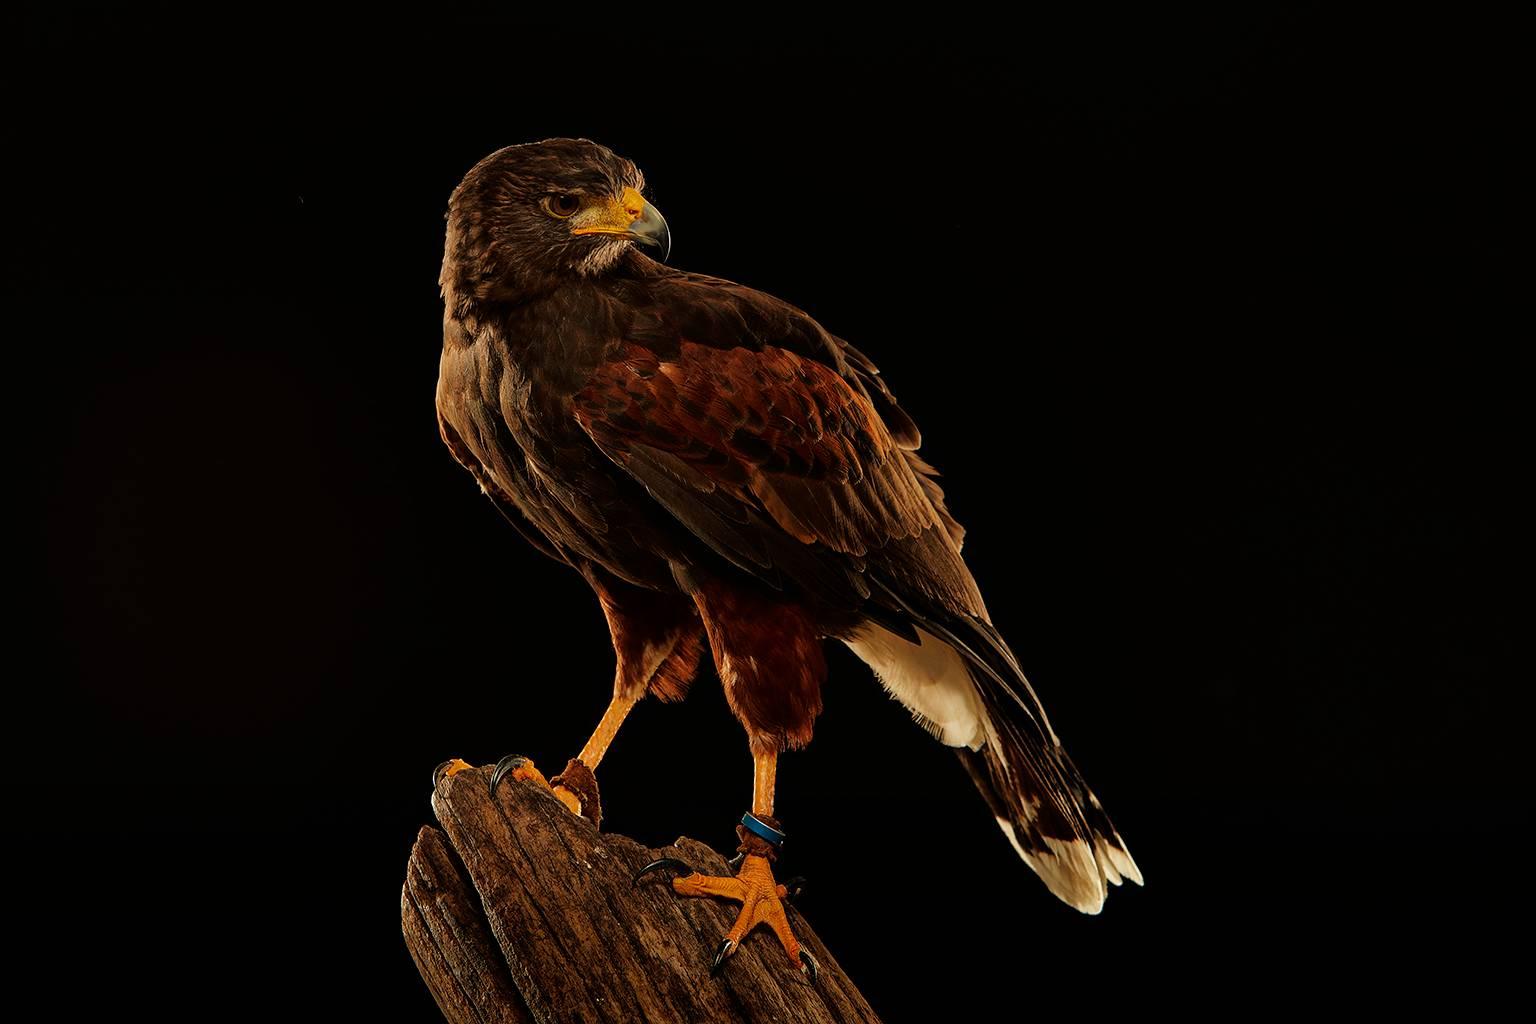 Chris Gordaneer Color Photograph - Birds of Prey Harris' Hawk No. 1